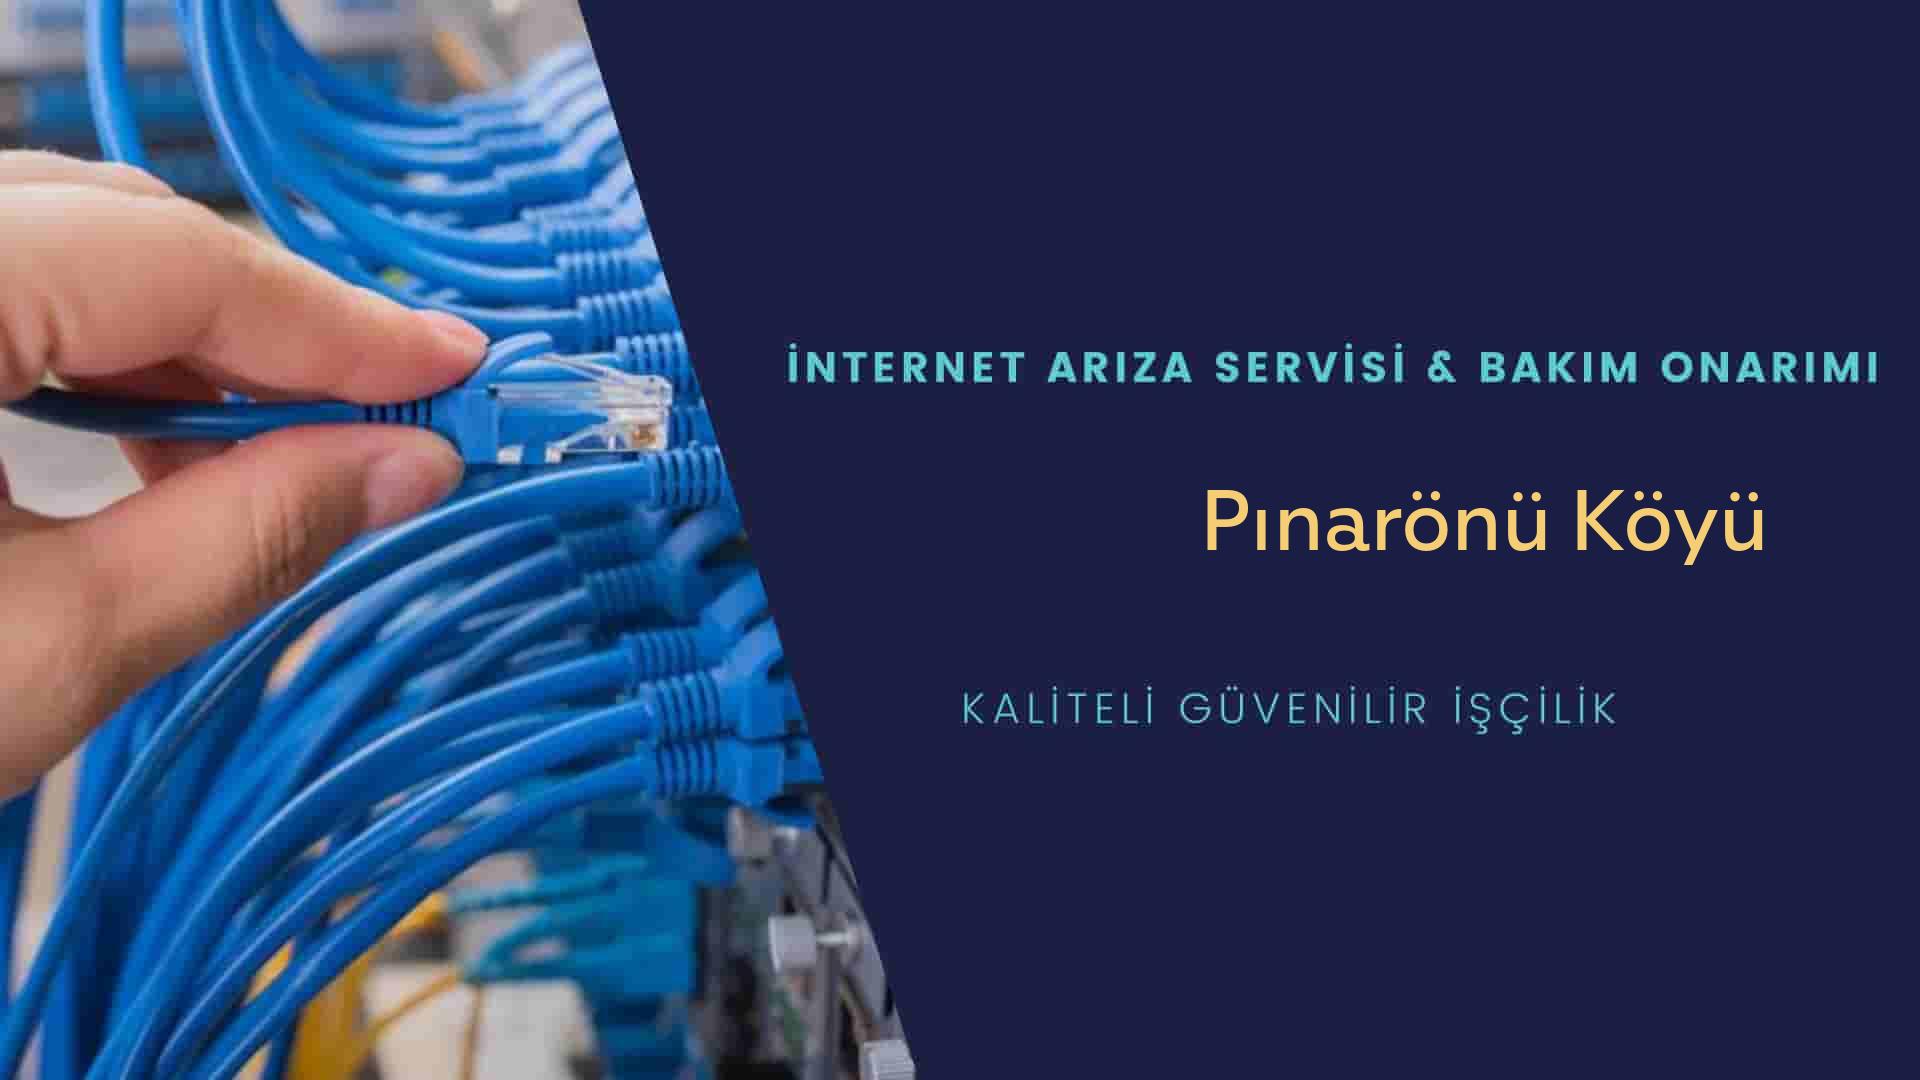 Pınarönü Köyü internet kablosu çekimi yapan yerler veya elektrikçiler mi? arıyorsunuz doğru yerdesiniz o zaman sizlere 7/24 yardımcı olacak profesyonel ustalarımız bir telefon kadar yakındır size.